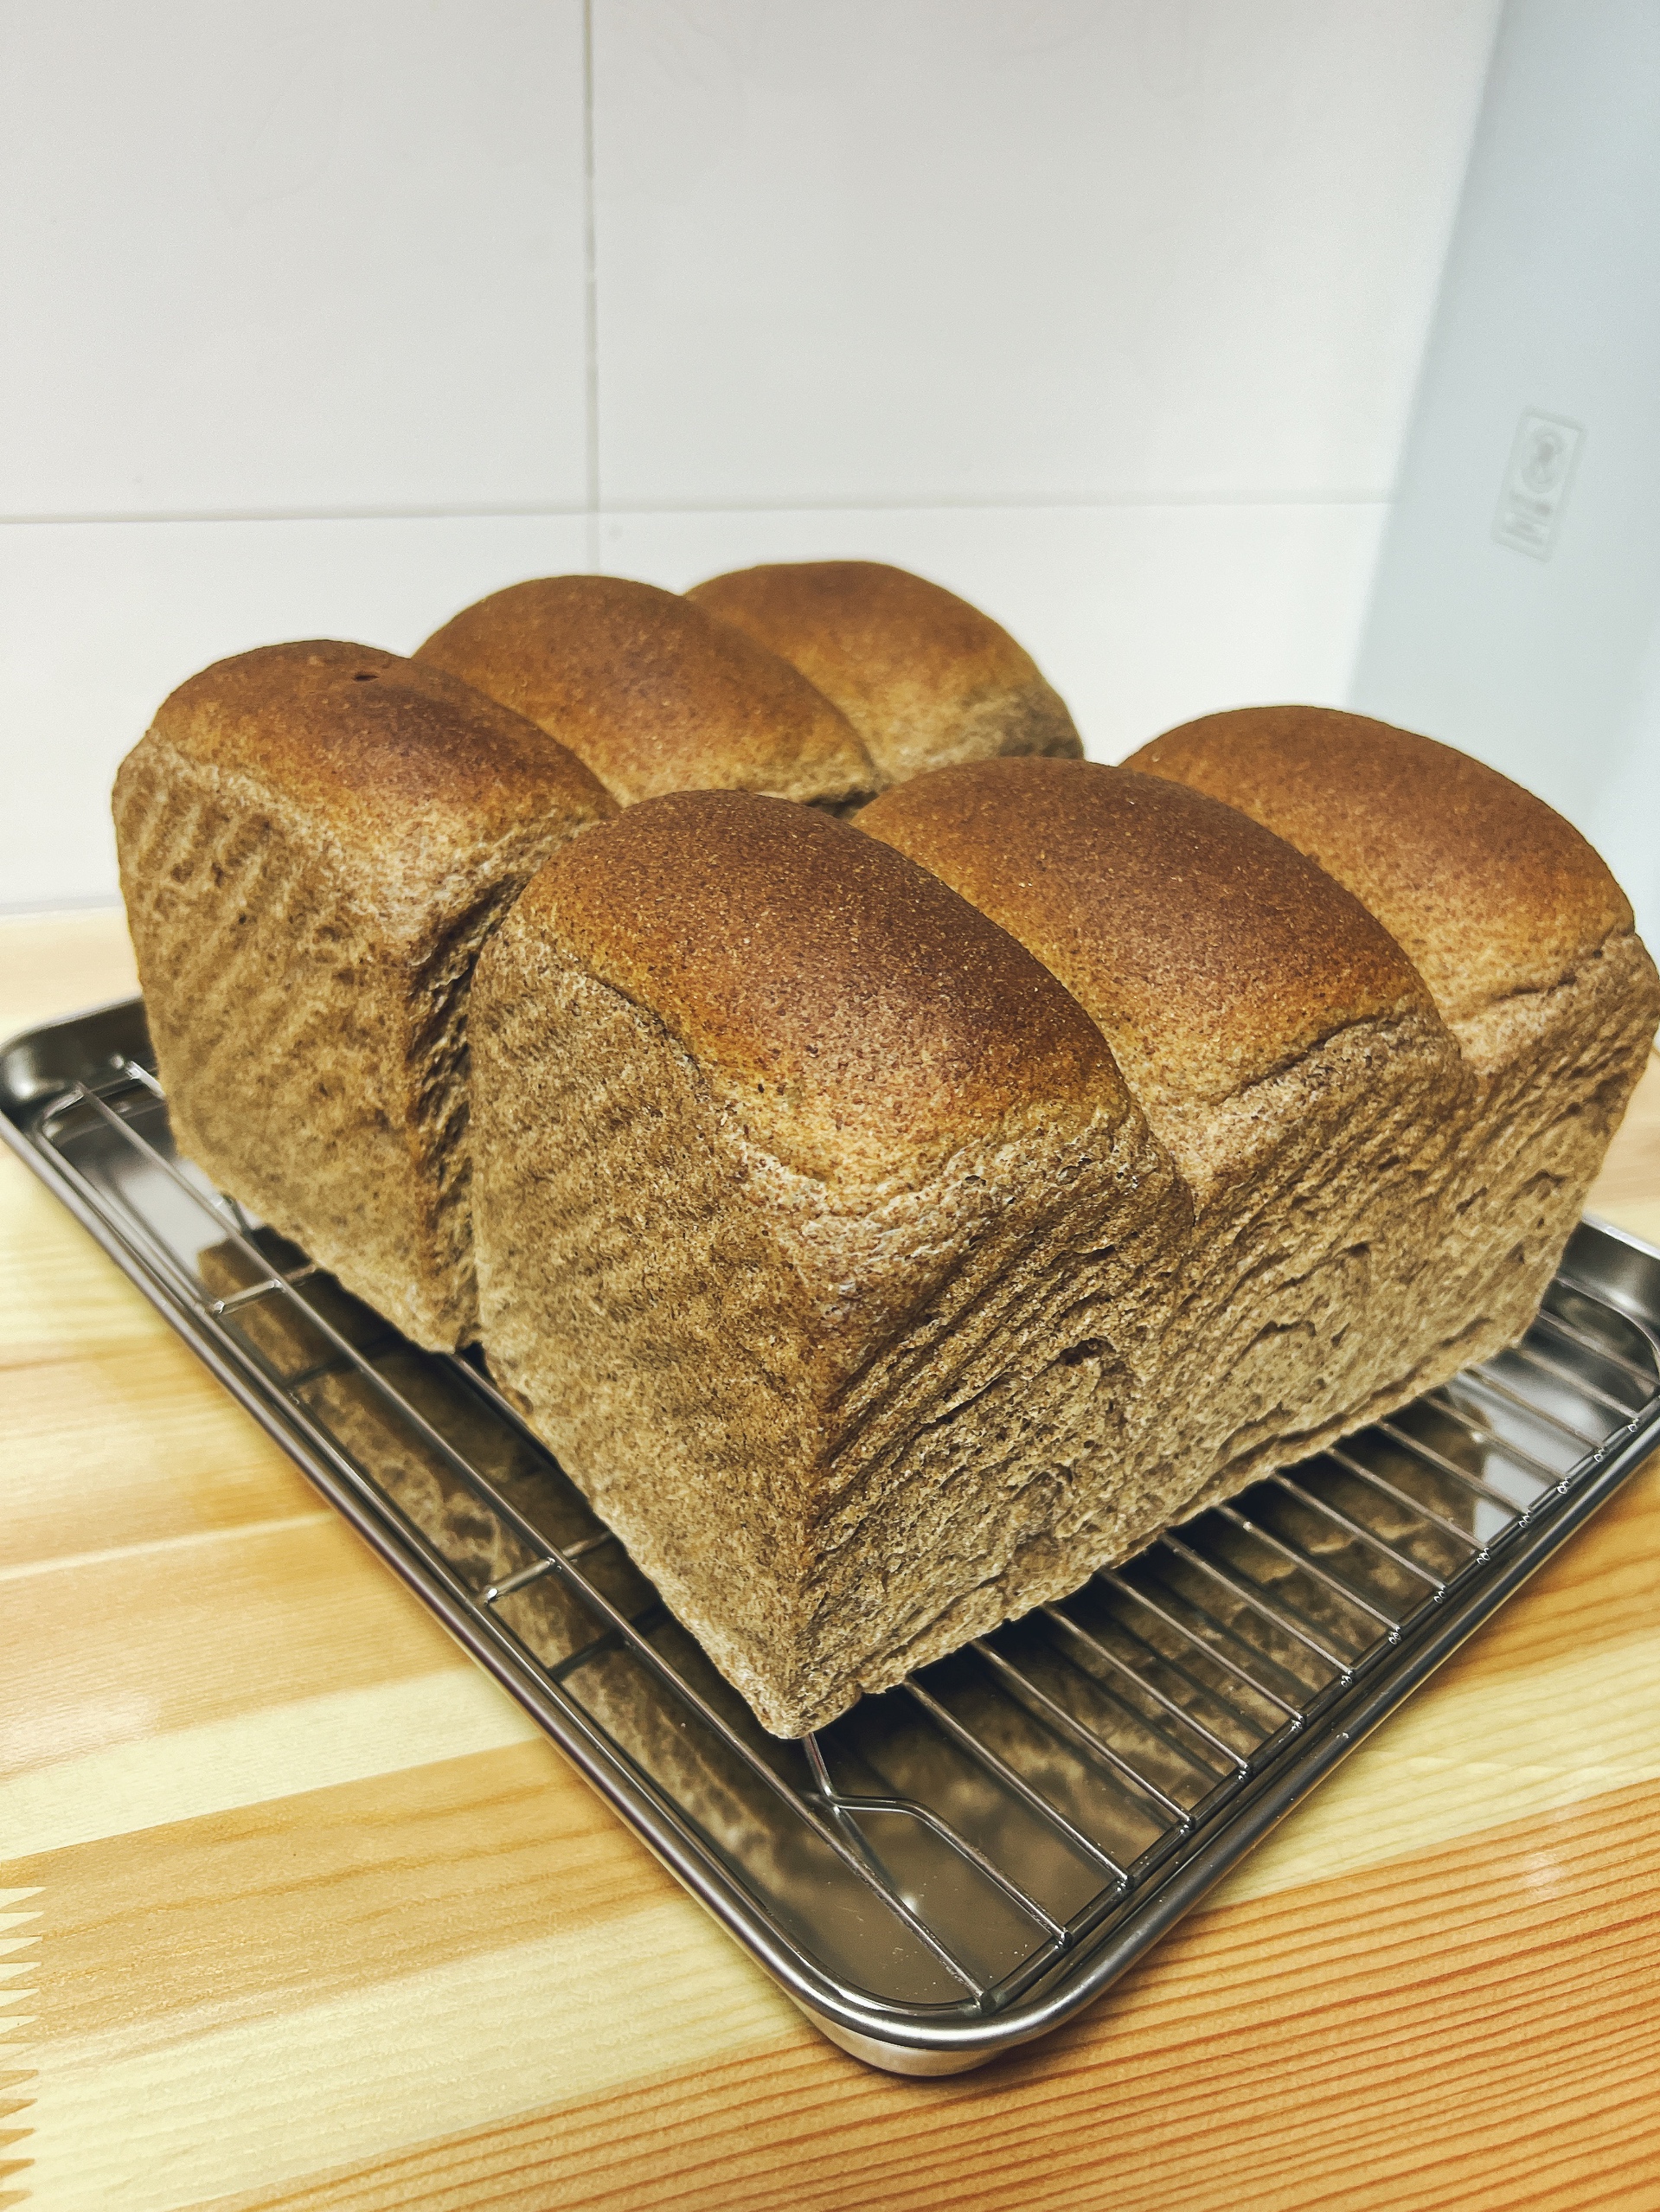 100%纯黑全麦面包「烫面」的做法